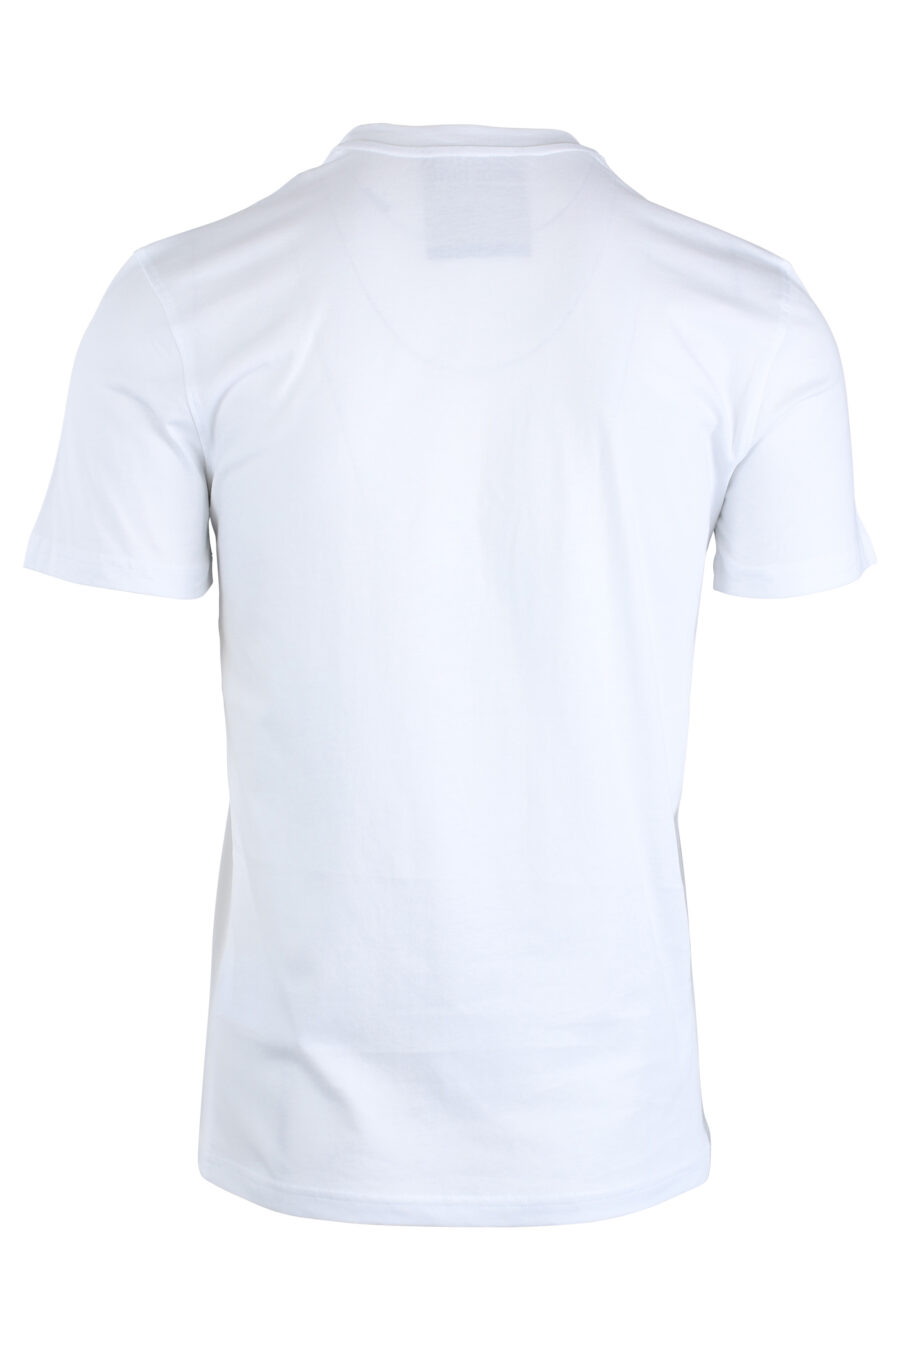 Weißes T-Shirt mit schwarzem Logo-Streifen - IMG 1687